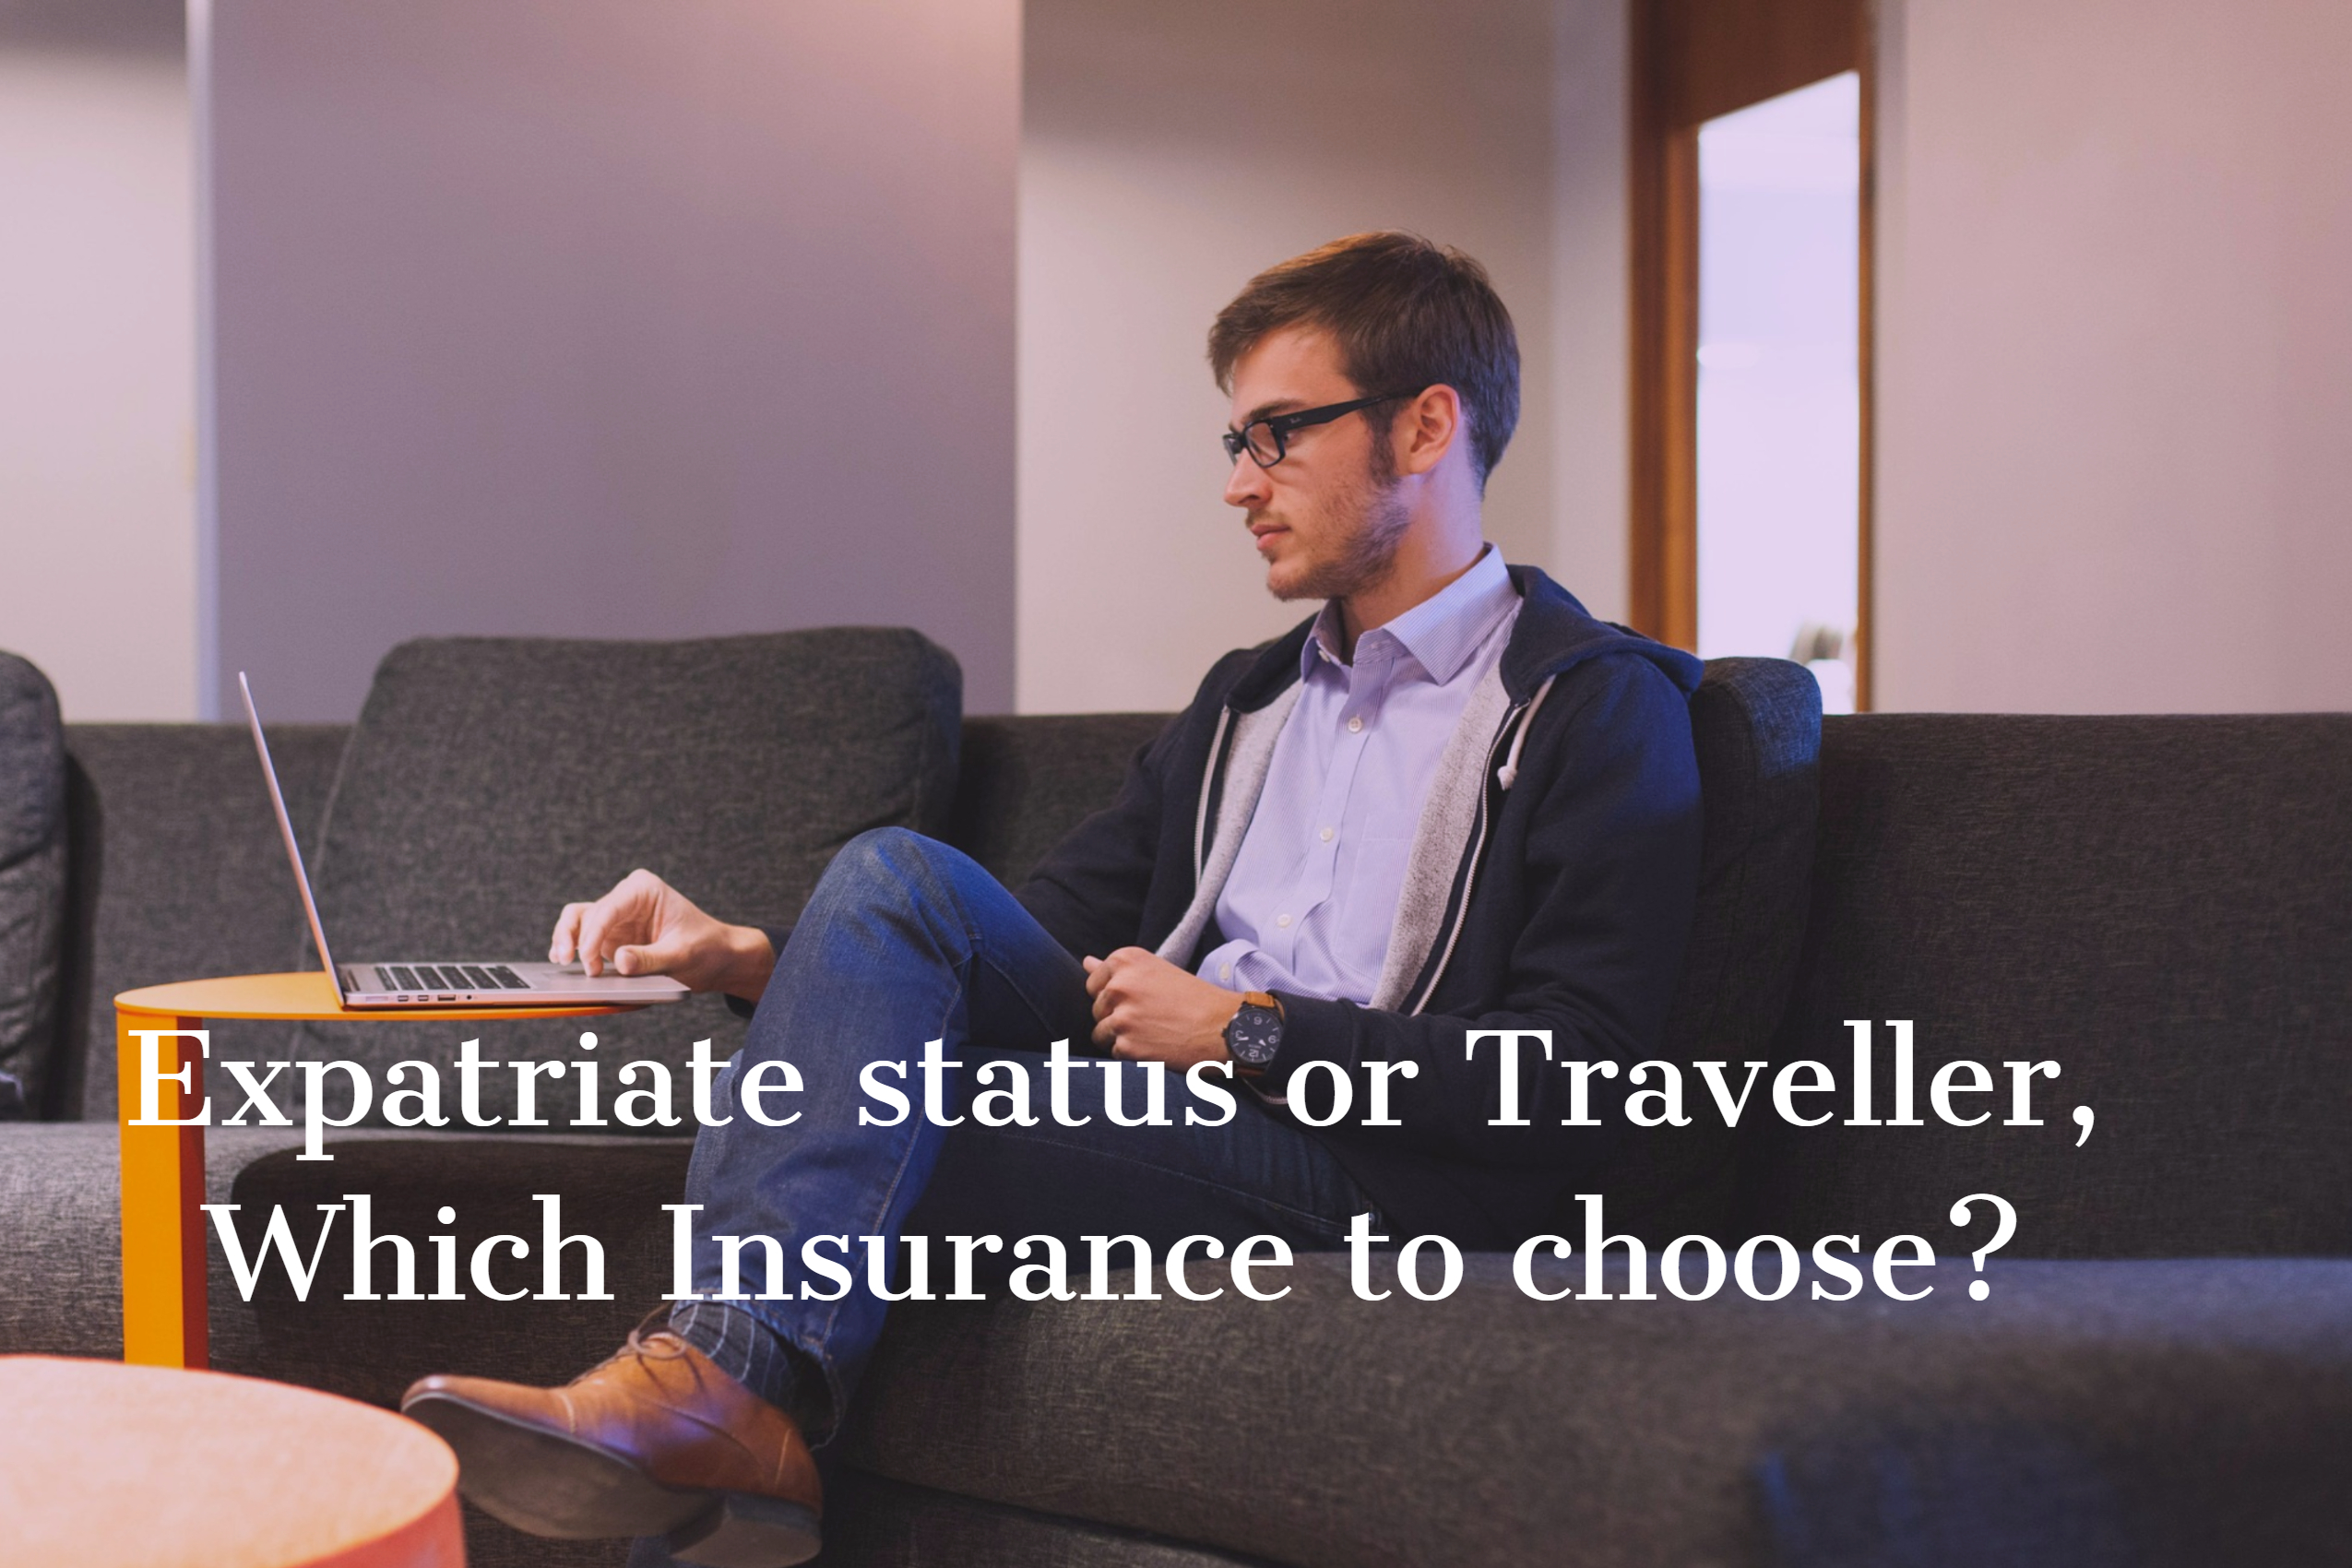 Aoc_insurance_expatriate_traveller_insurance.jpg